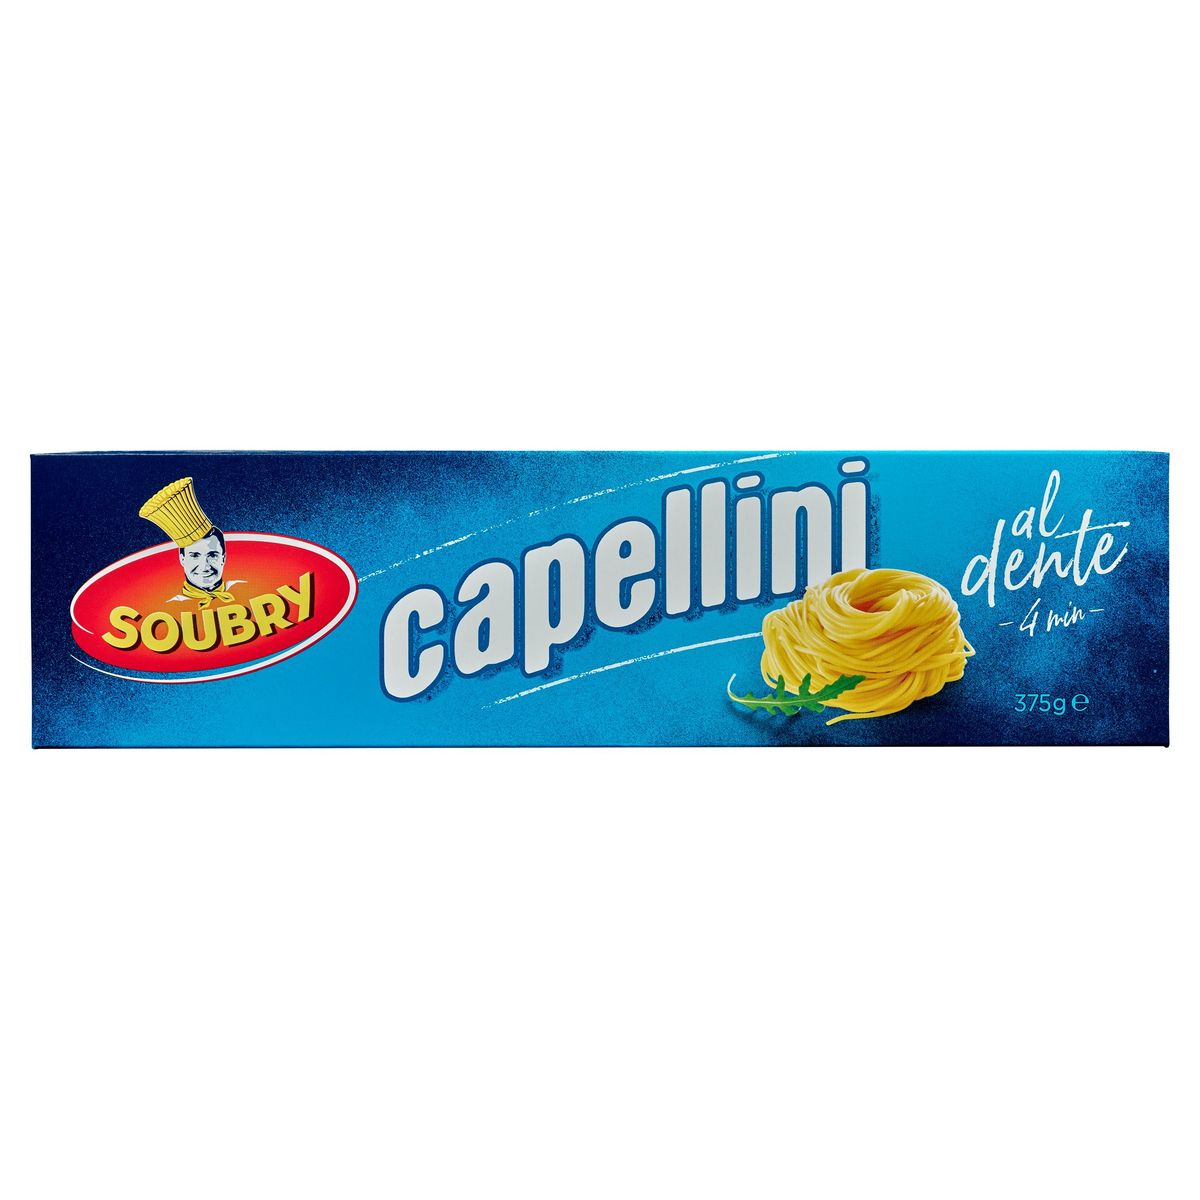 Soubry Pasta Capellini 375g